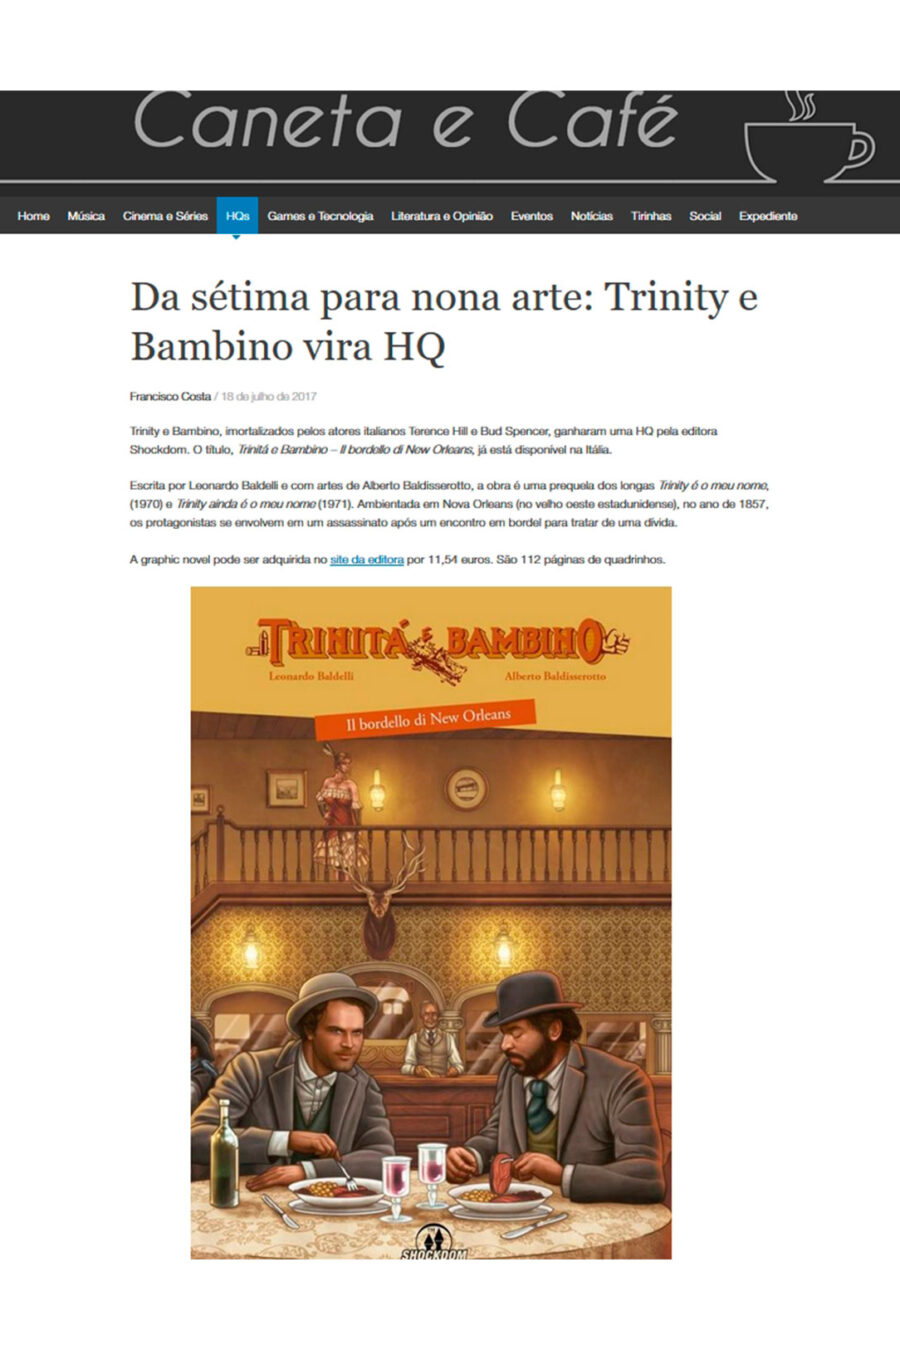 Articolo de Caneta e Cafè sul fumetto di Trinità e Bambino